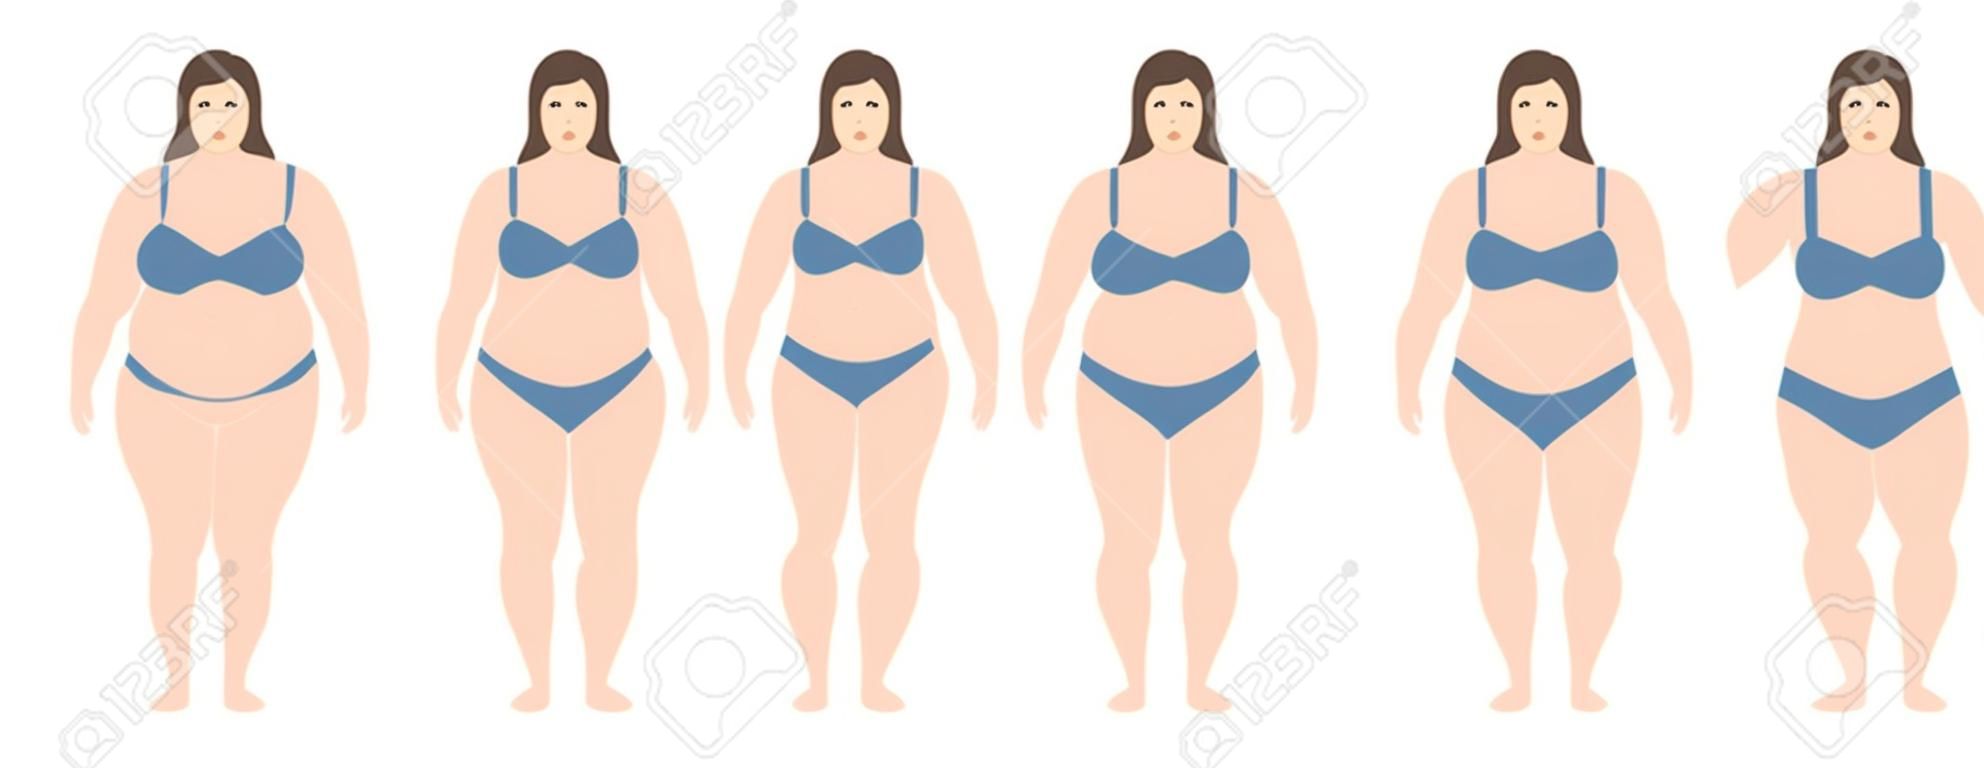 Une illustration vectorielle de femmes avec un poids différent de l'anorexie à extrêmement obèse. Indice de masse corporelle, concept de perte de poids.